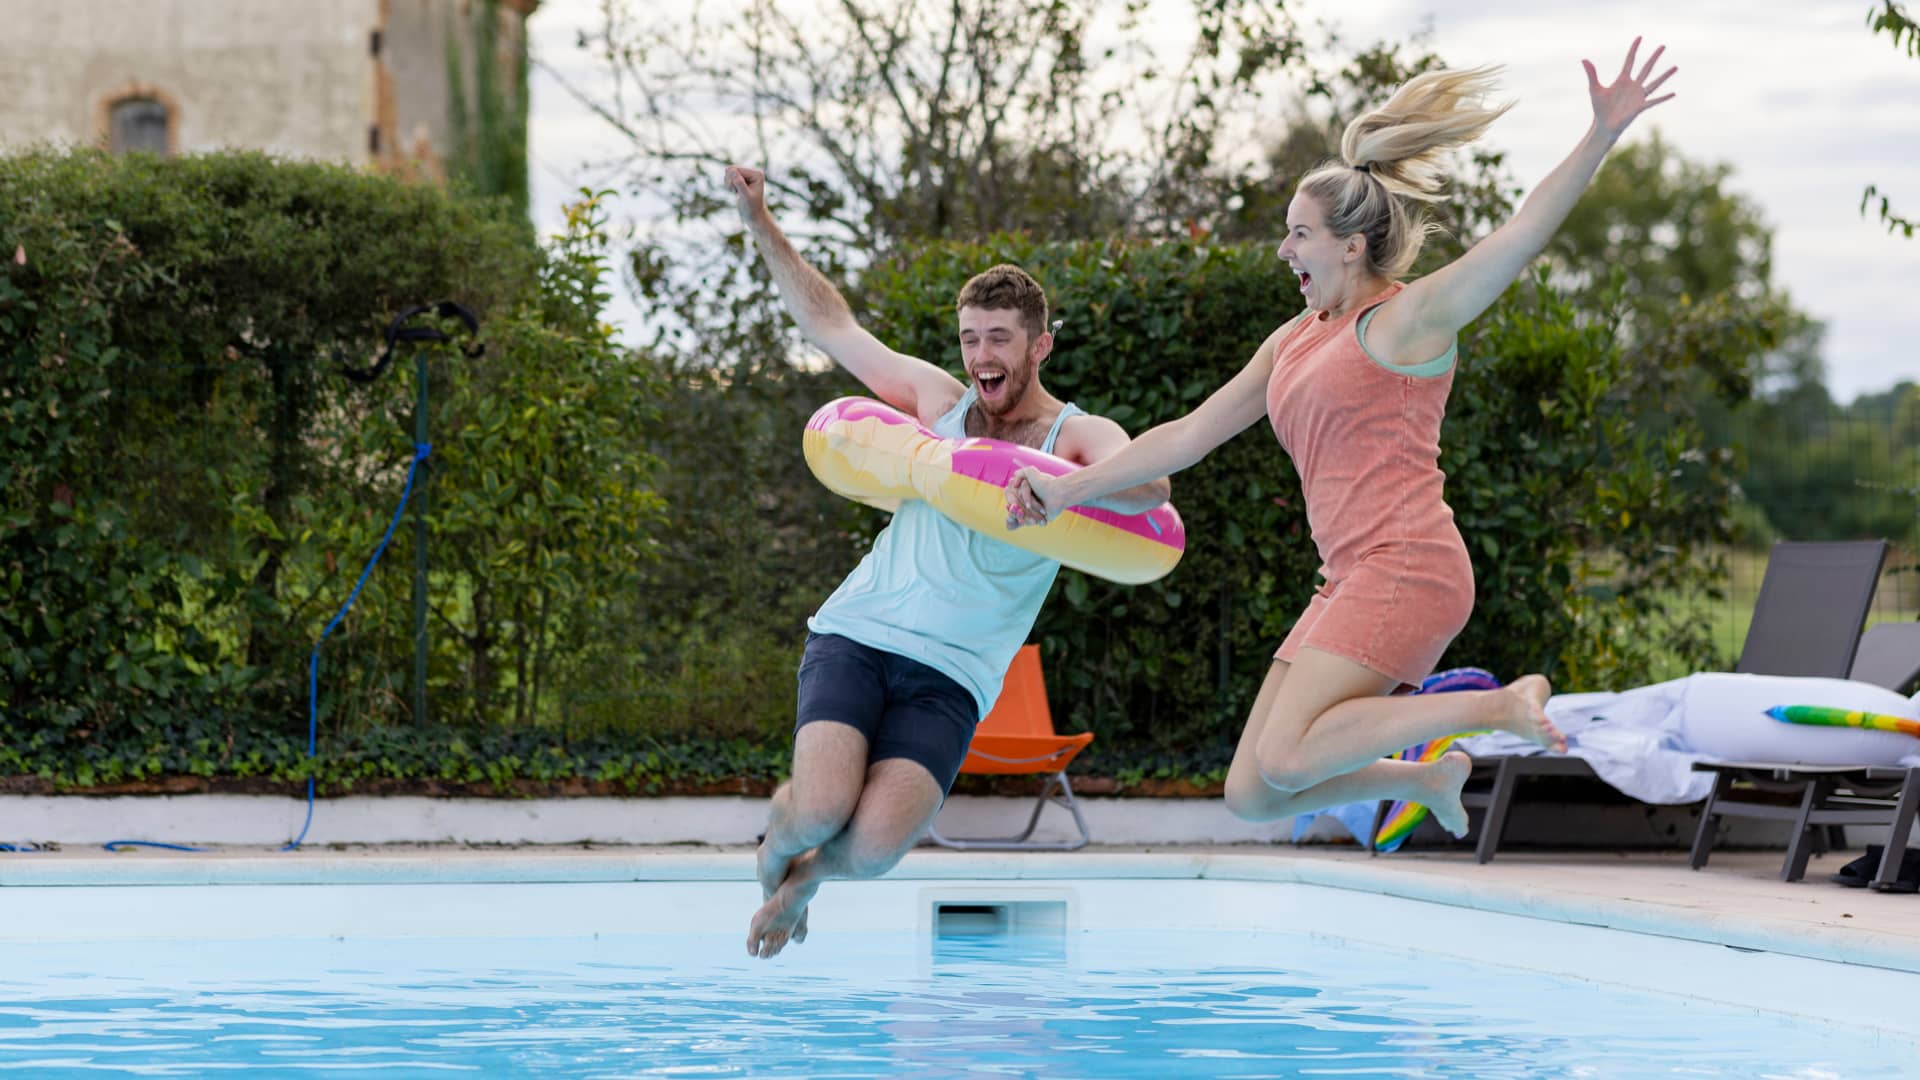 Una pareja de jovenes salta a la piscina que simboliza su portabilidad a freedompop